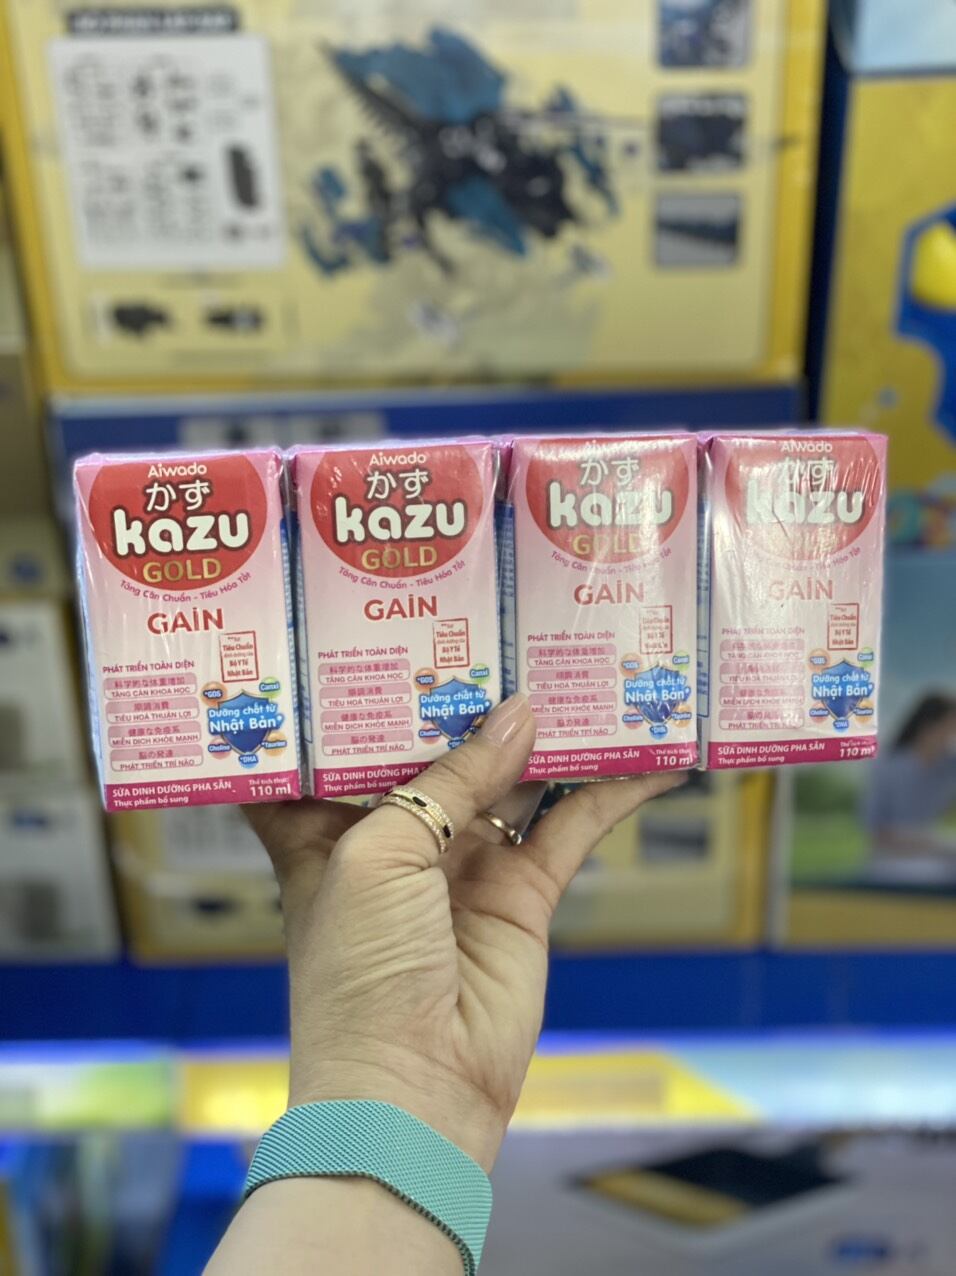 Sữa bột pha sẵn kazu gold gain 110ml lốc 4 hộp - ảnh sản phẩm 1